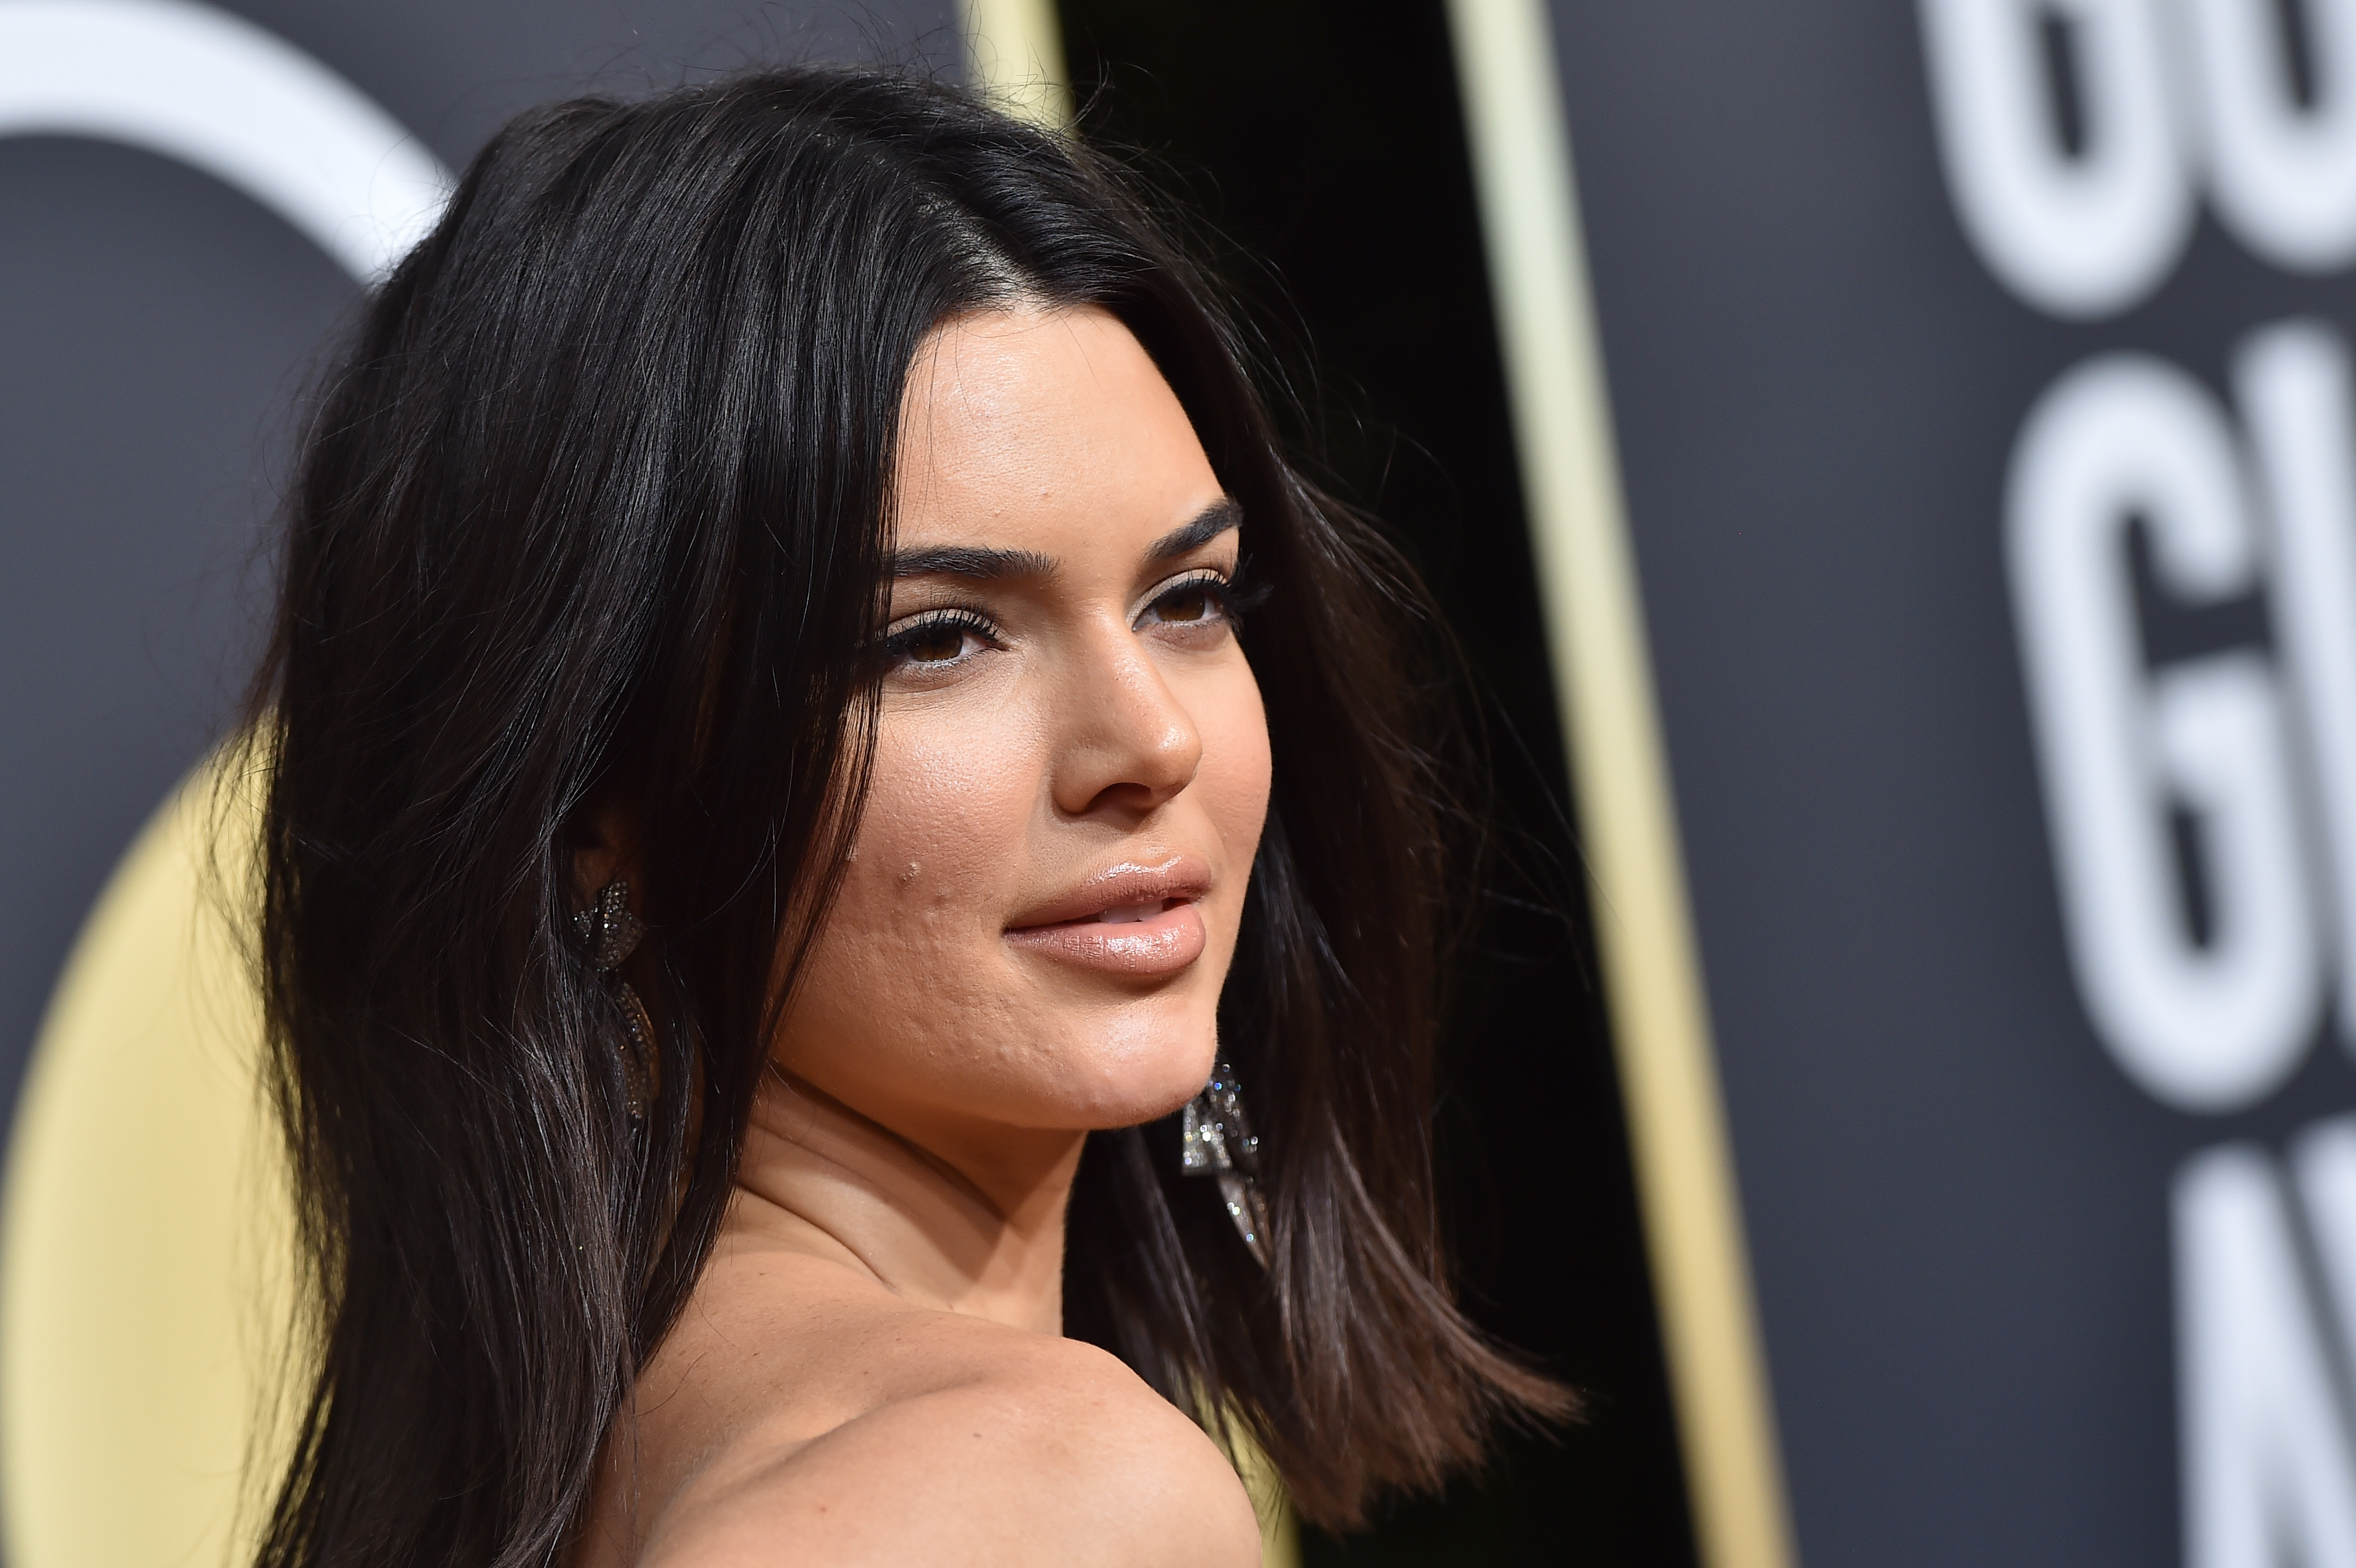 Kendall Jenner lors de la 75e cérémonie annuelle des Golden Globe Awards en 2018 | Source : Getty Images